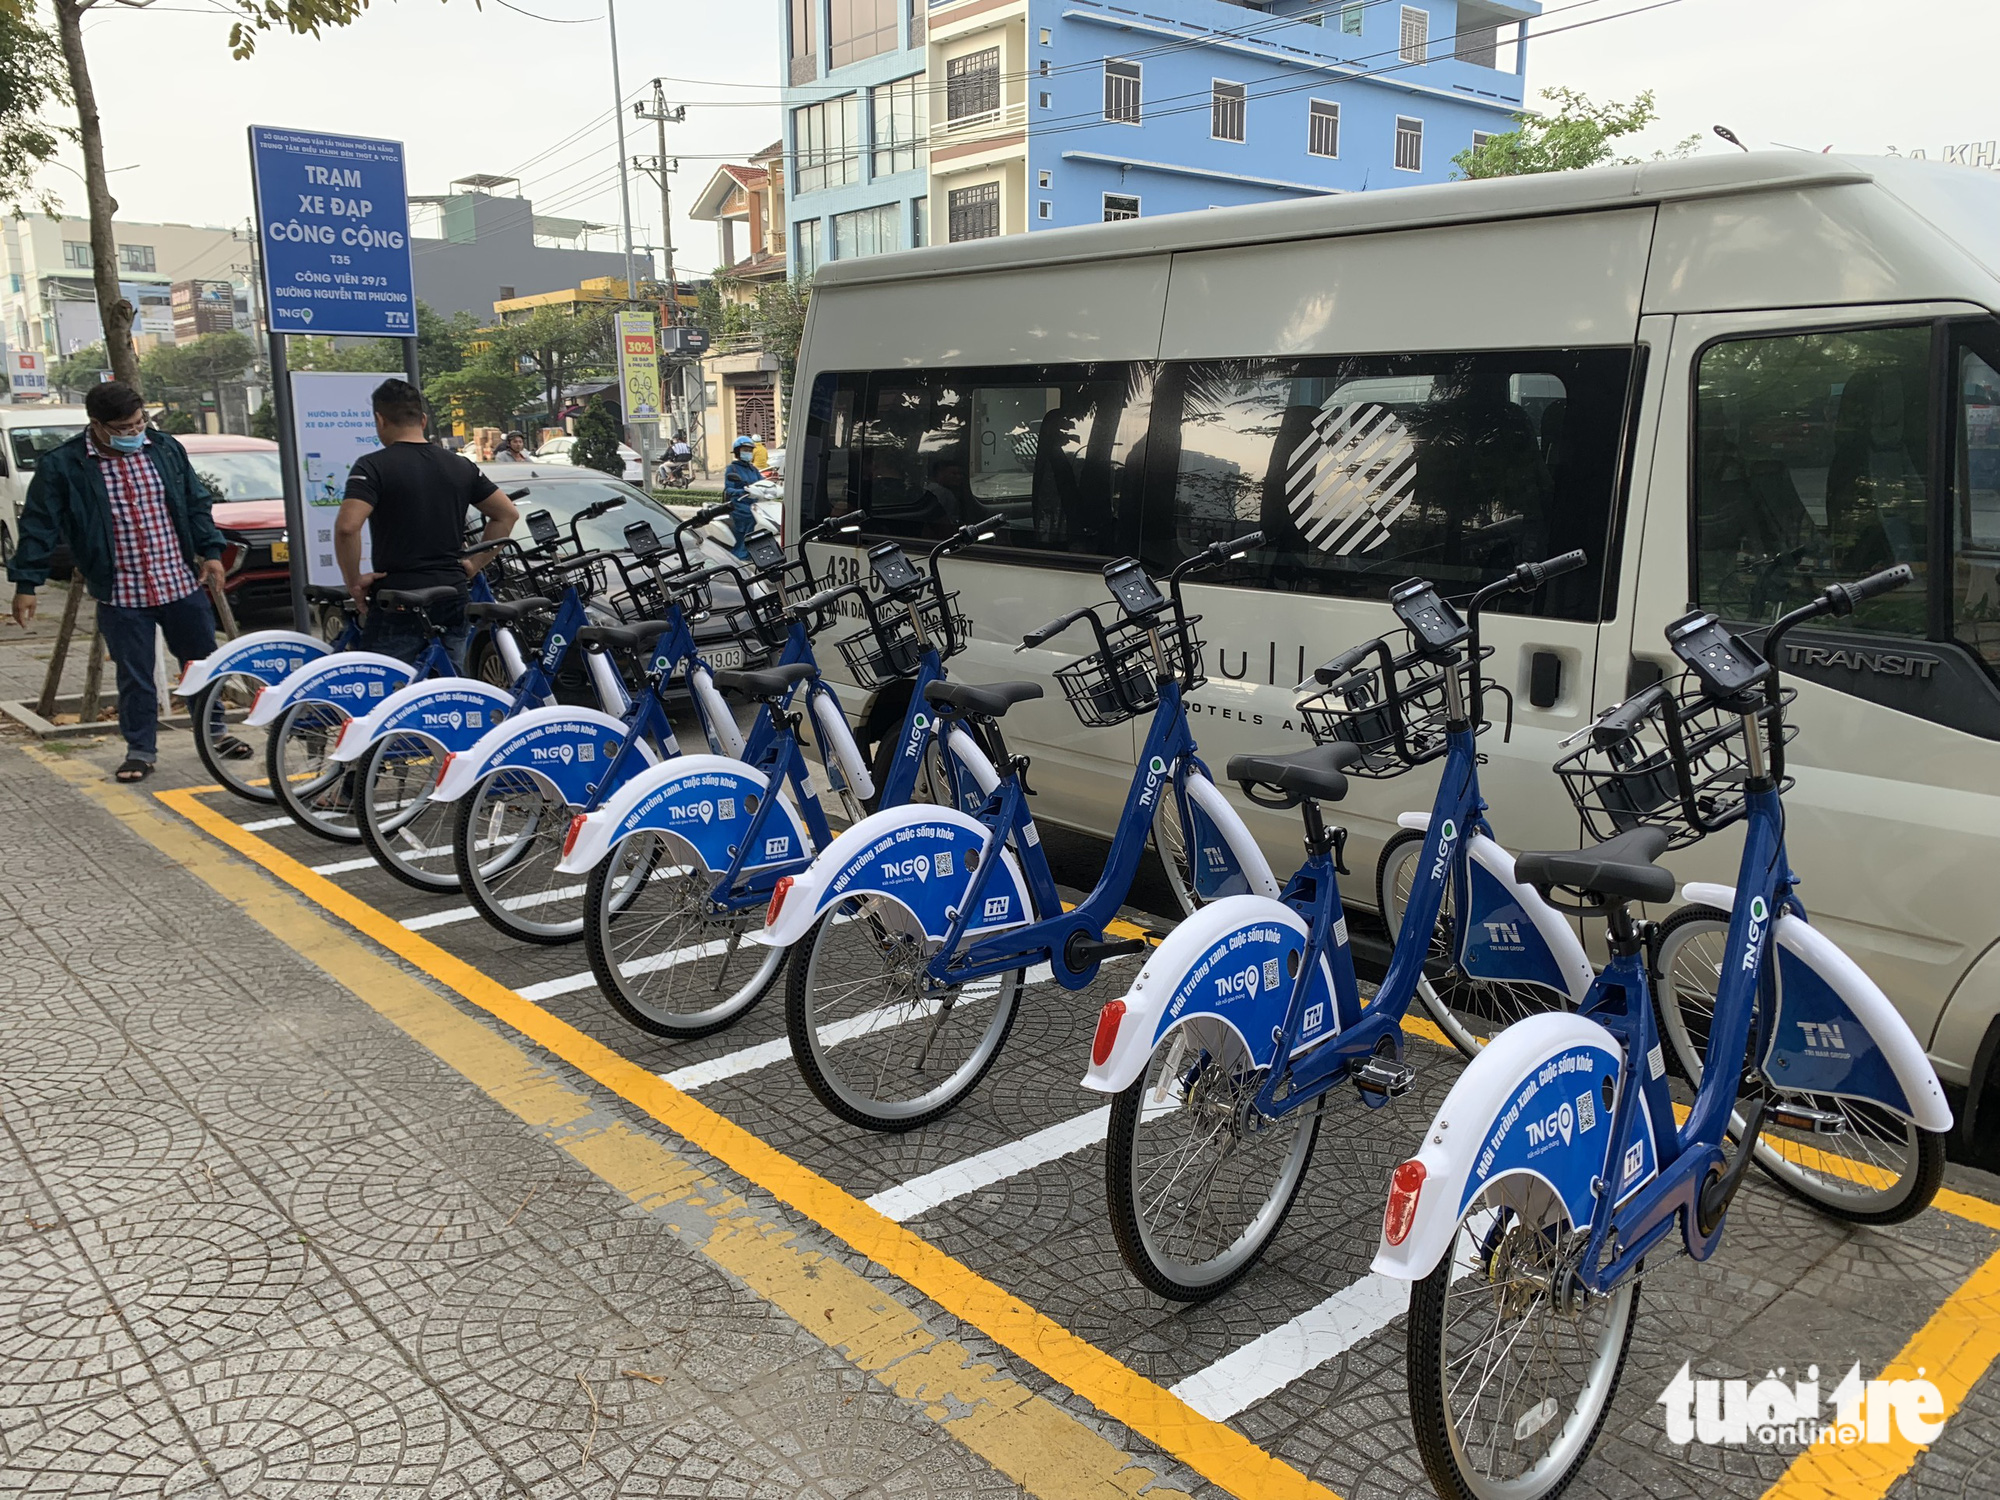 Da Nang to pilot public bike rental service this month